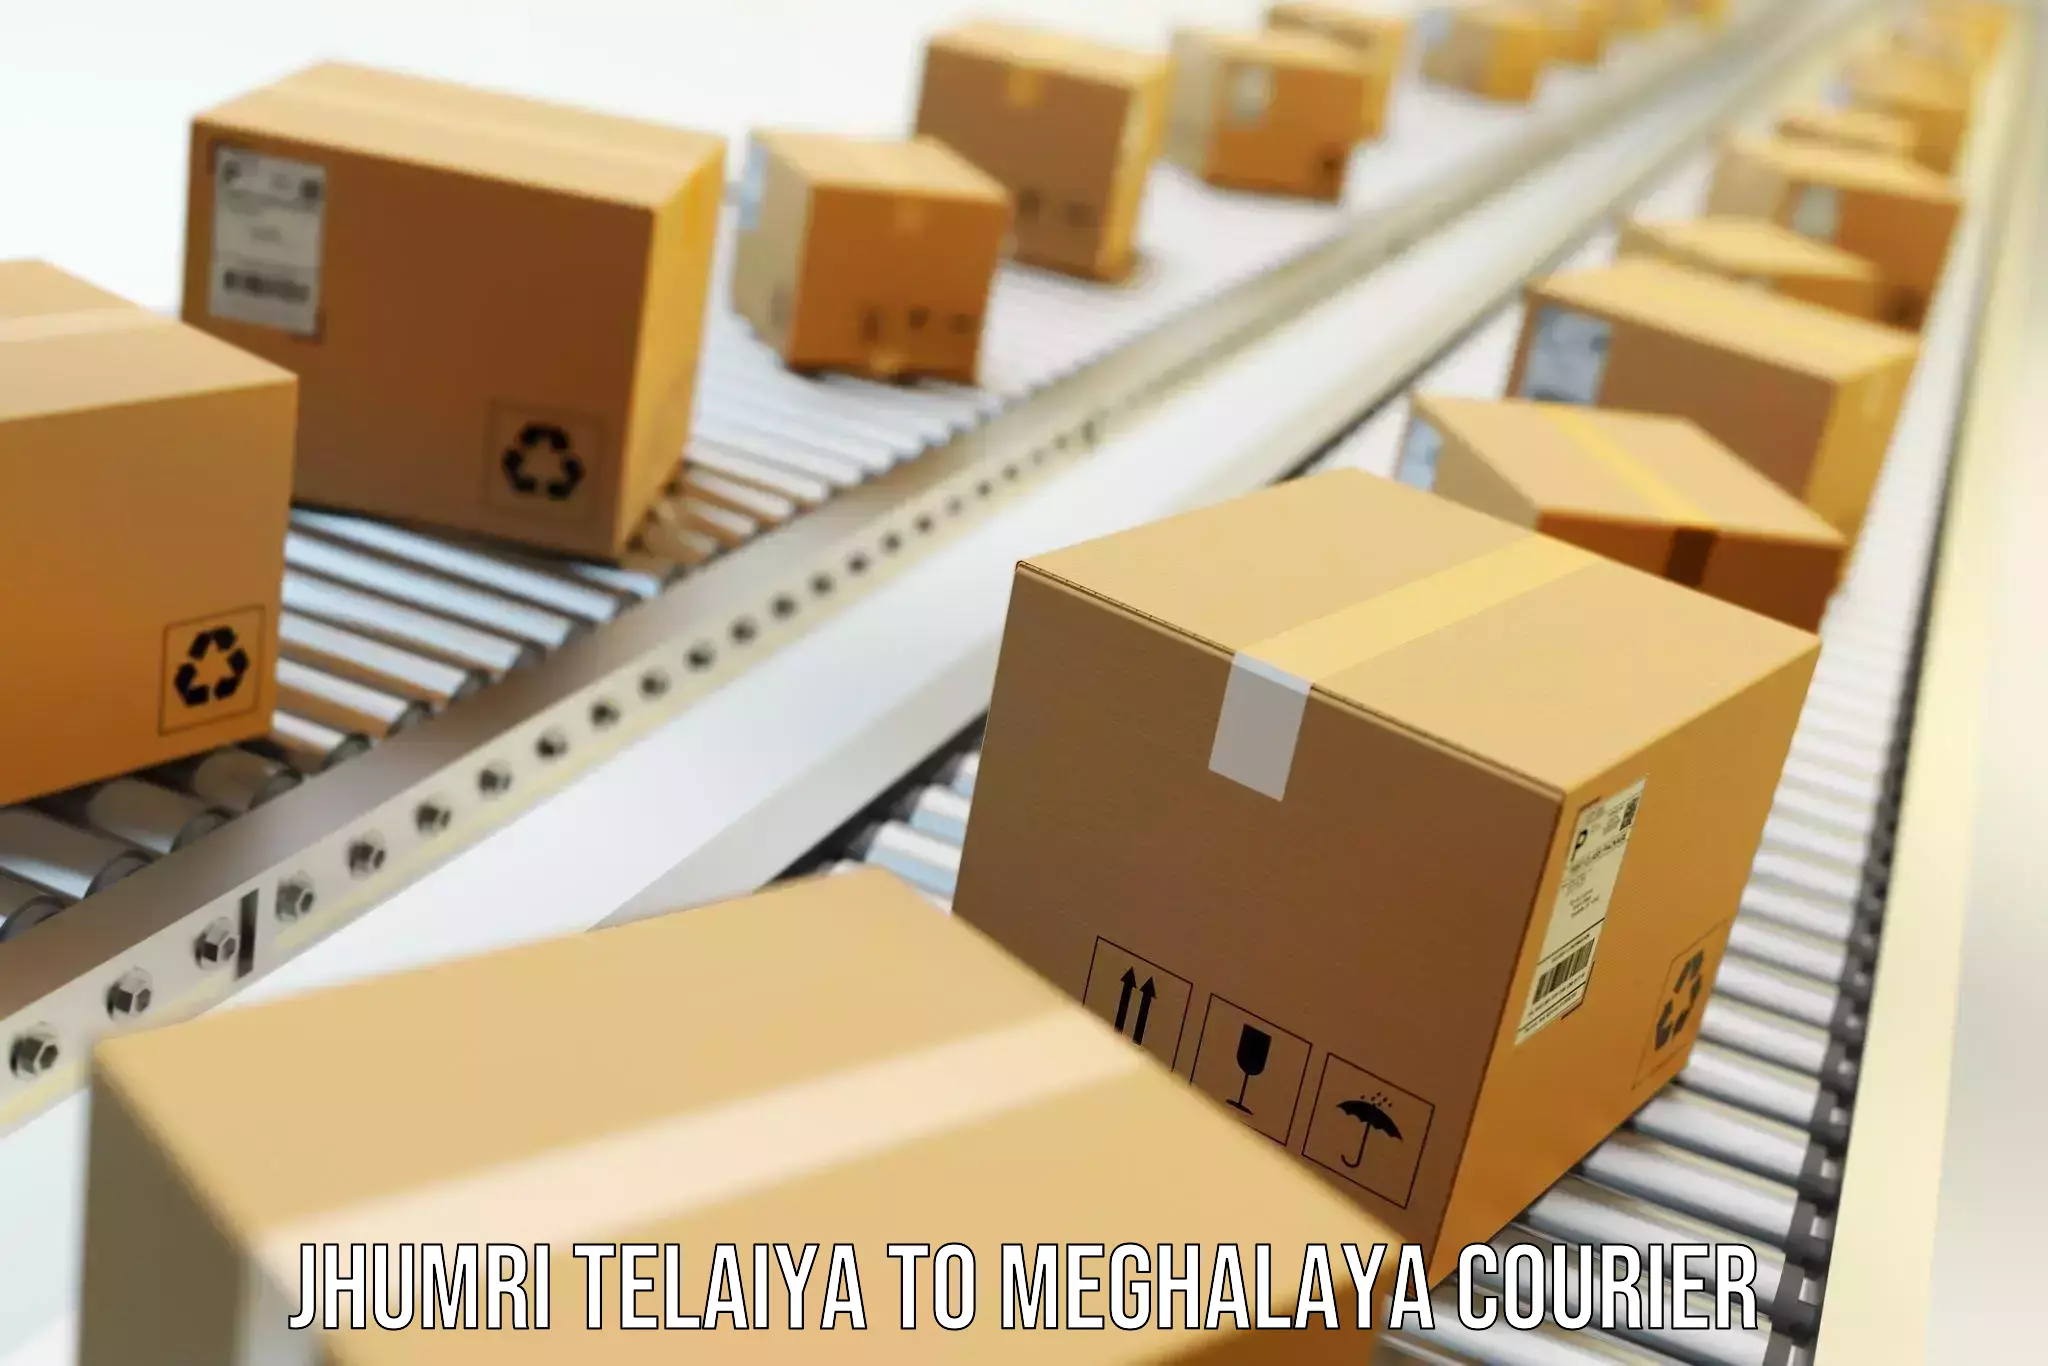 Moving and storage services Jhumri Telaiya to Meghalaya